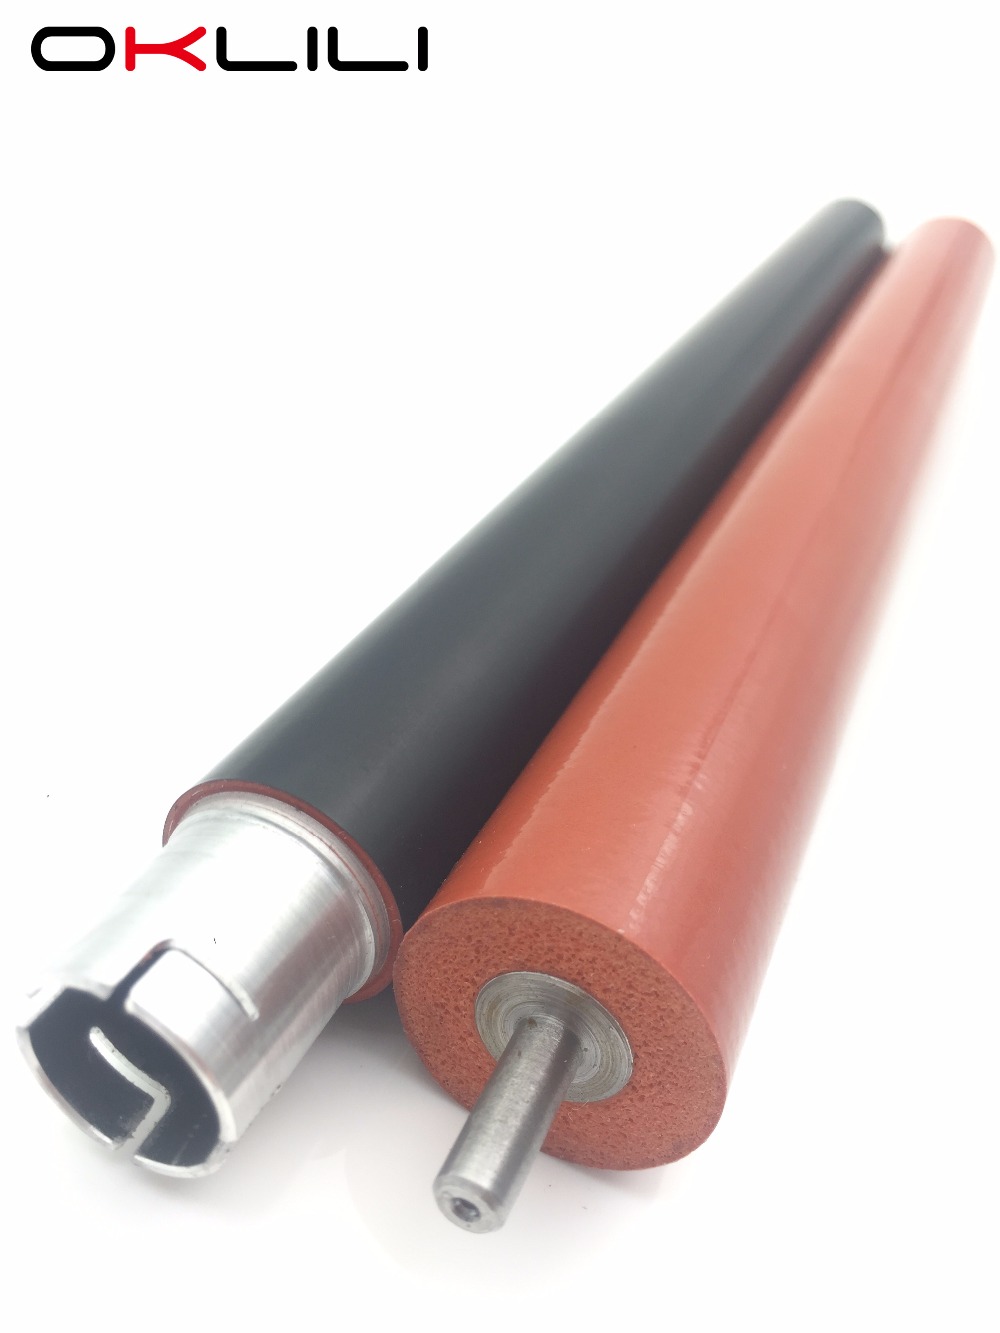 JAPAN LY6754001 Heat Upper Fuser Roller + lower pressure roller for Brother HL3140 HL3170 MFC9130 MFC9330 MFC9340 HL3150 MFC9140